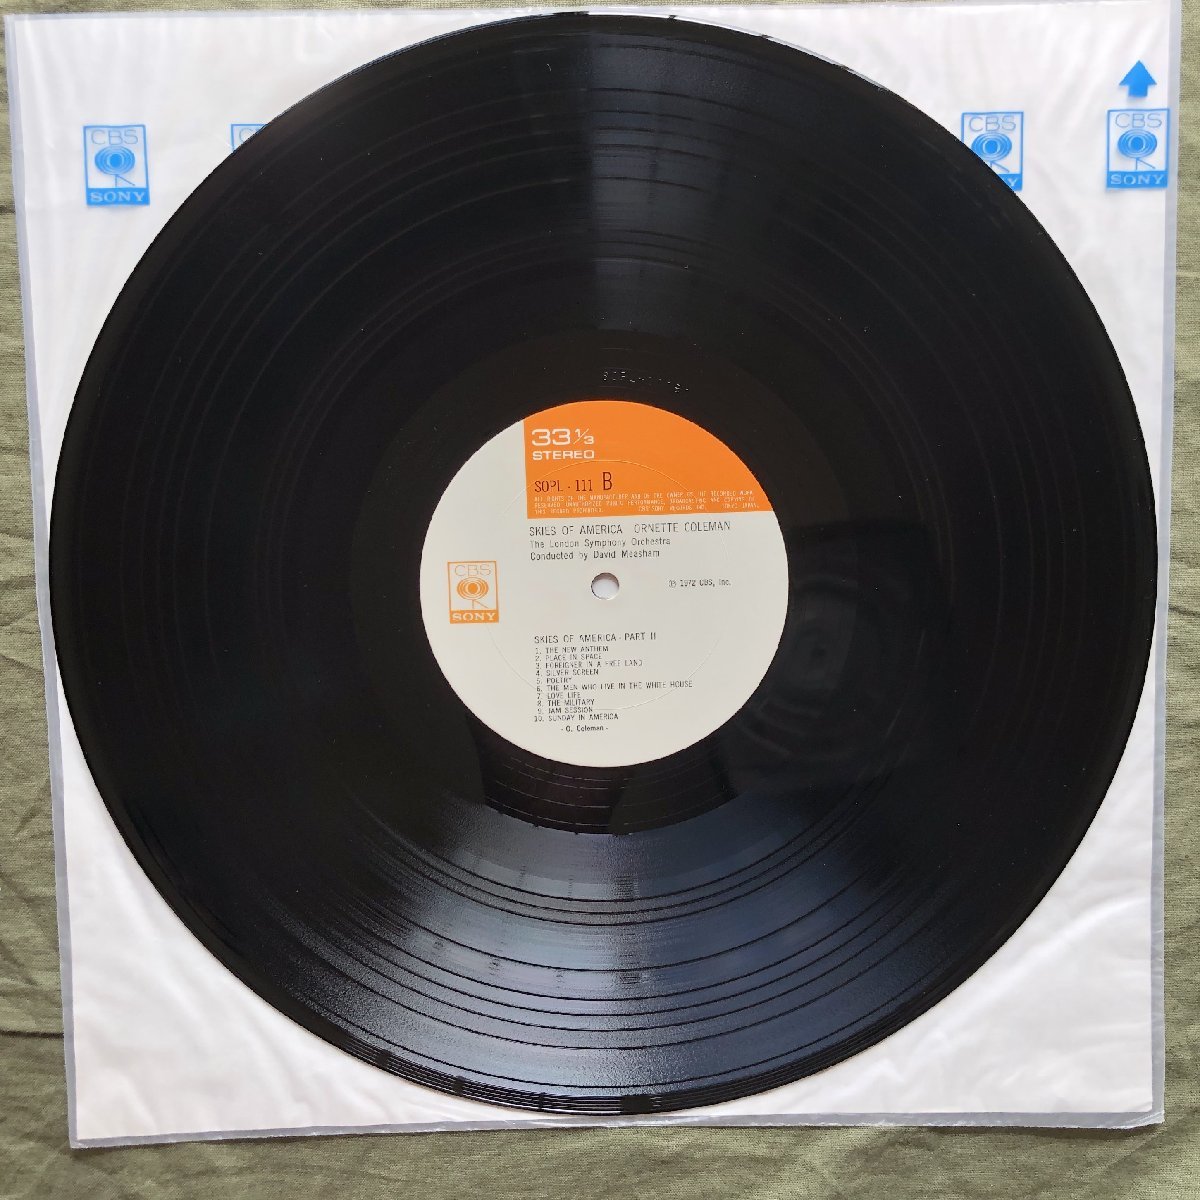 原信夫Collection 傷なし美盤 美ジャケ 新品並み 1972年 国内初盤 オーネット・コールマン Ornette Coleman LPレコード Skies Of America:_画像9